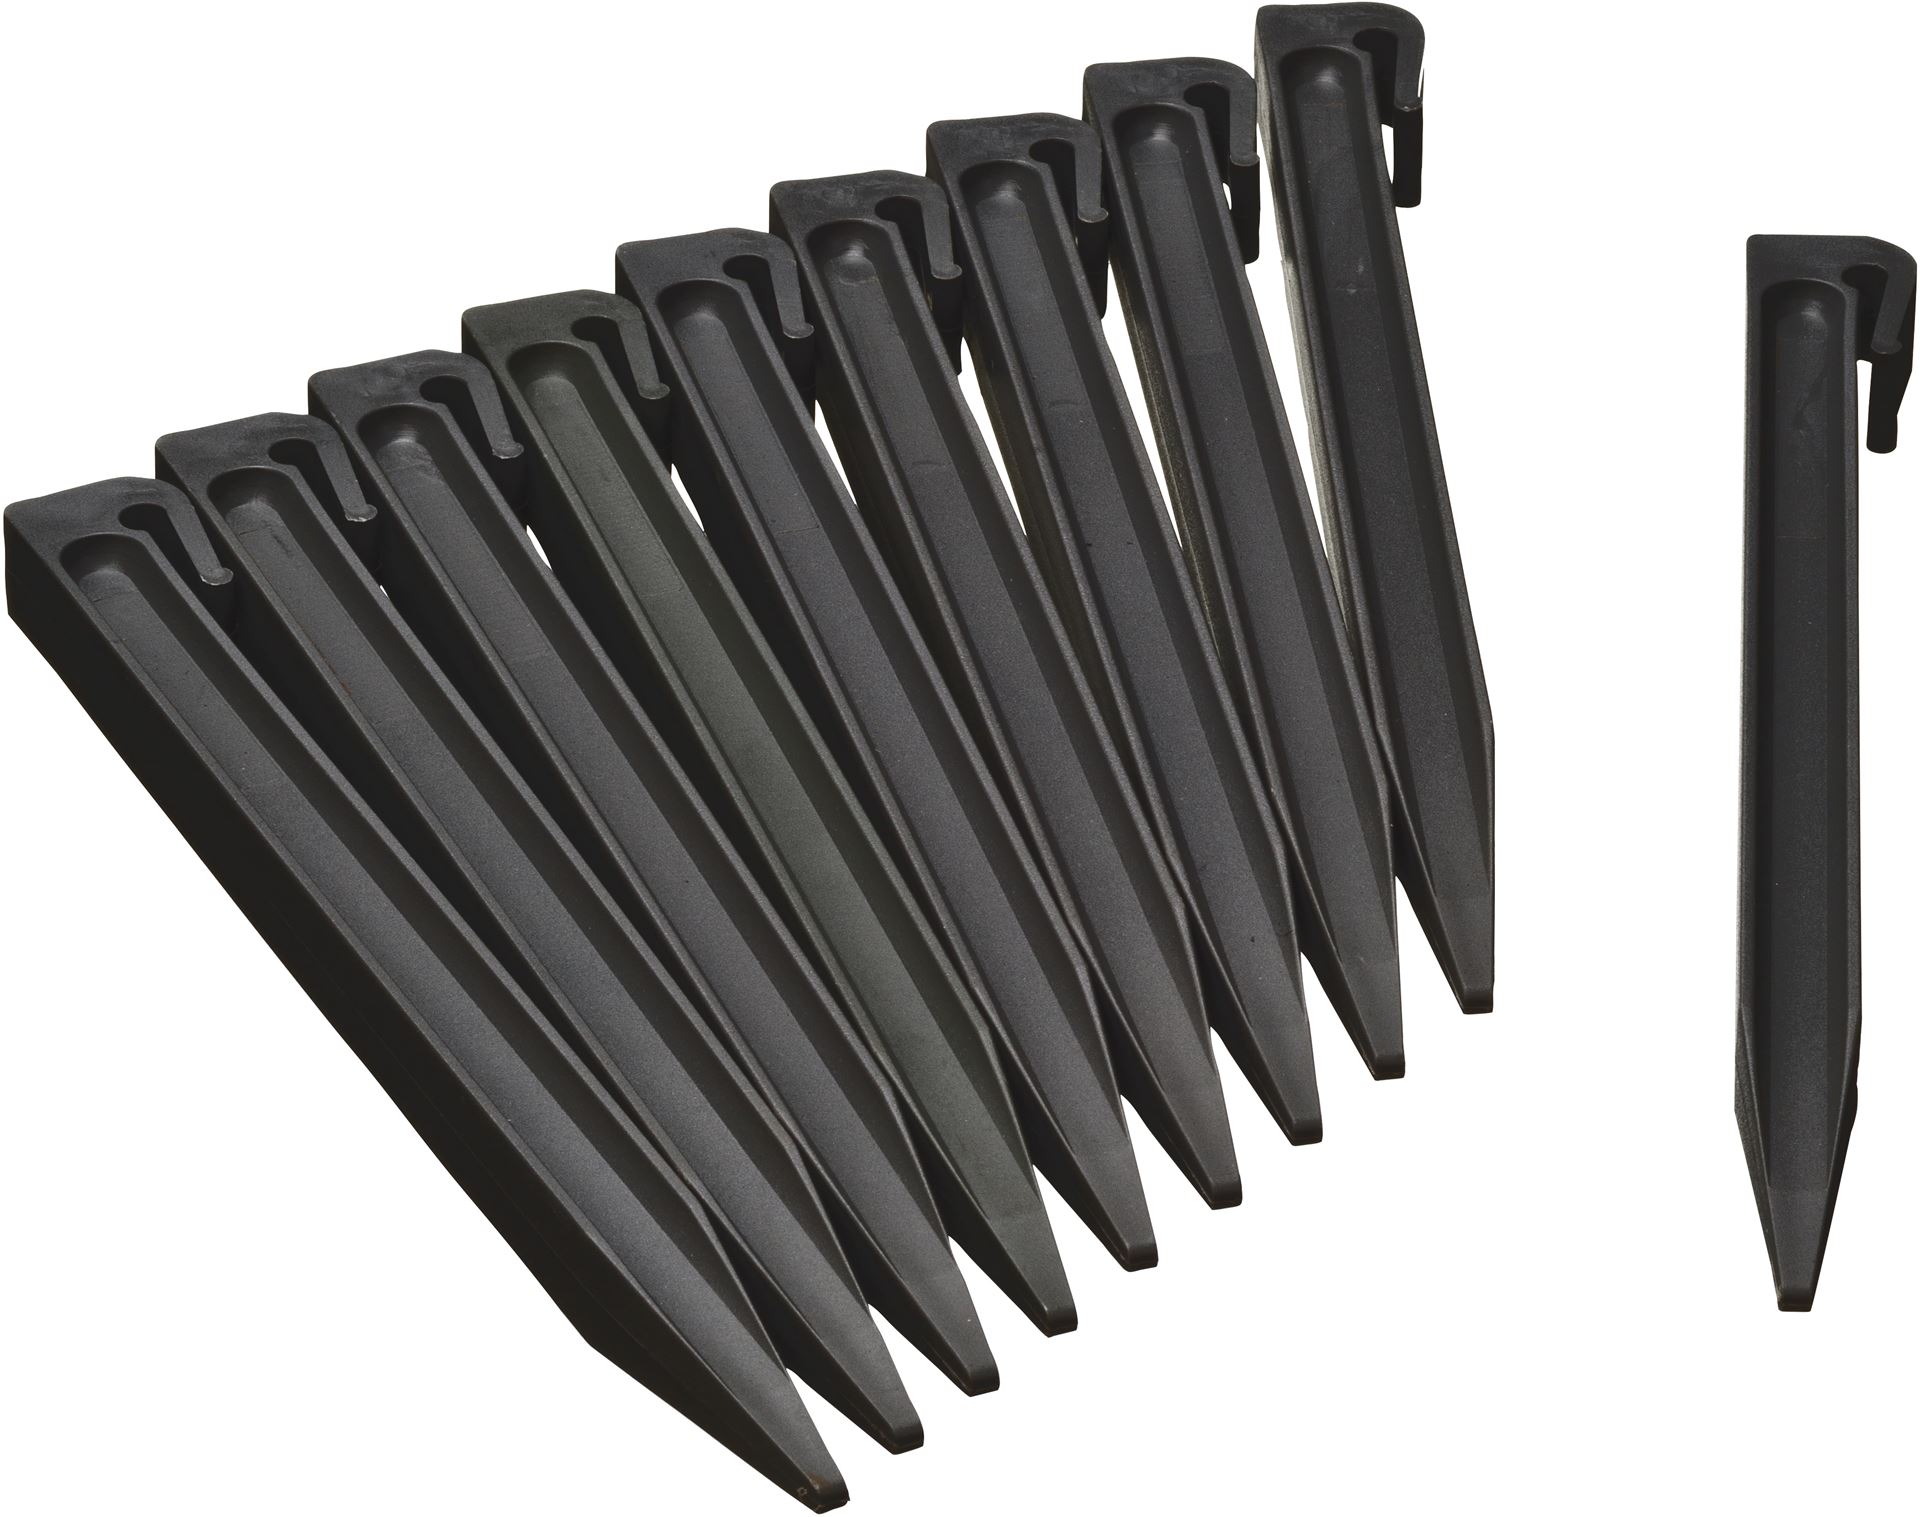 Grondpennen-voor-borderranden-zwart-H26-7x1-9x1-8cm-set-a-10-stuks